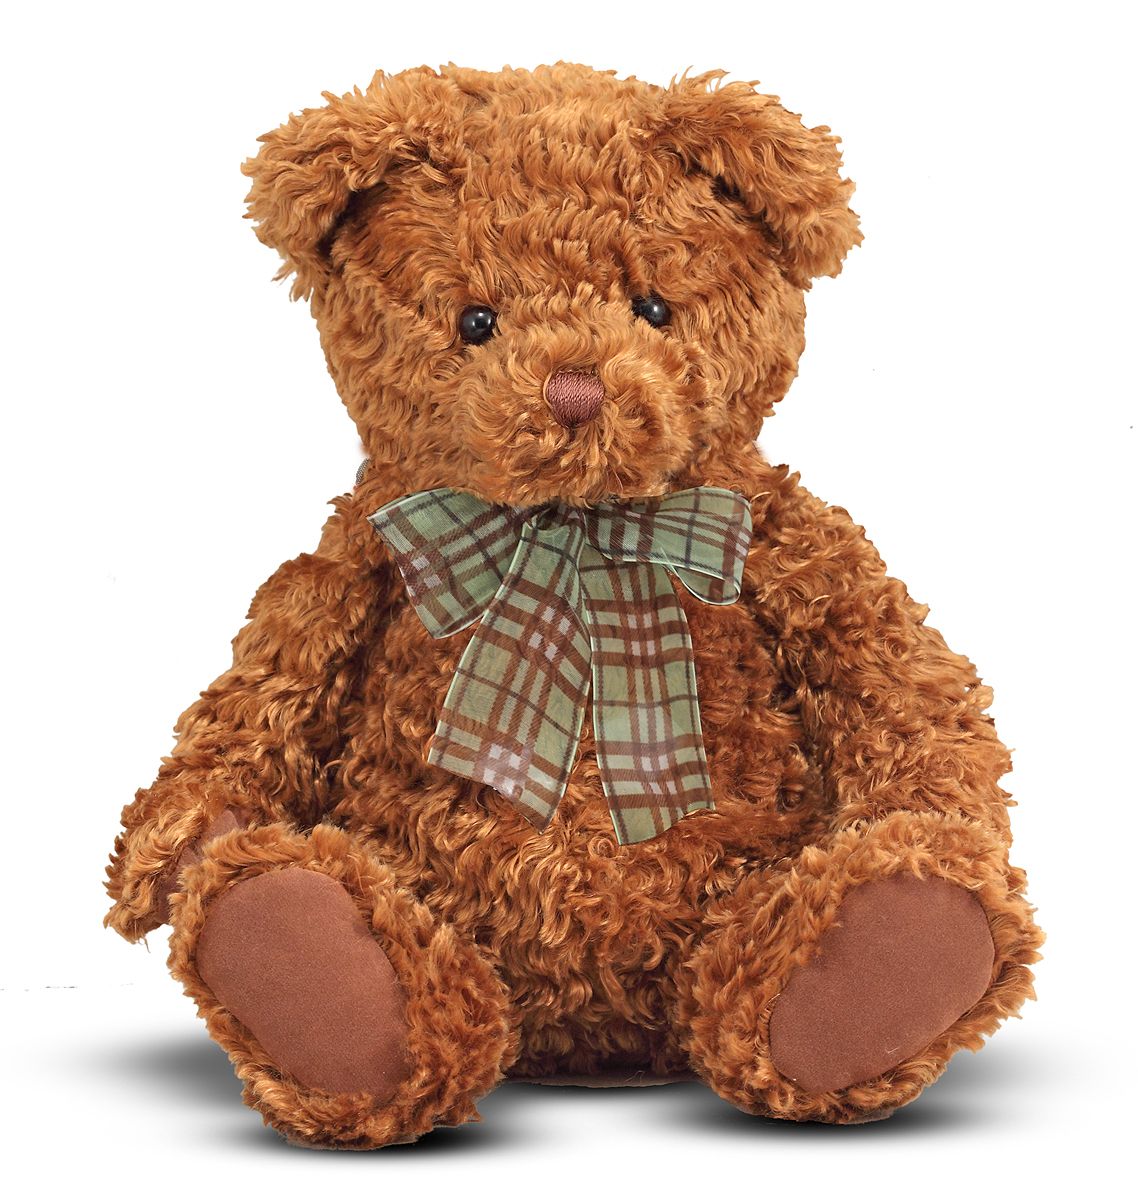 Stuffed Animals \u0026 Toys: Bears - Kmart